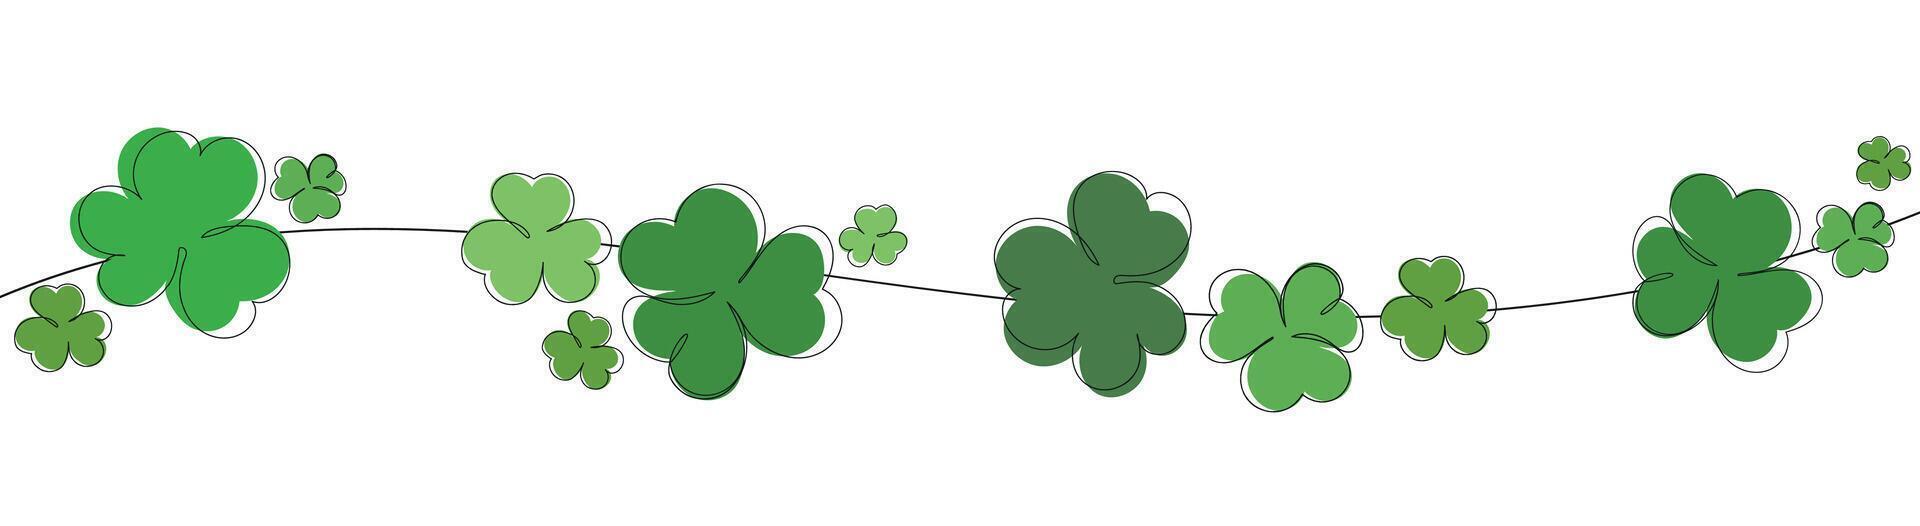 Lucky green clover for Irish festival St Patrick s day. Outline shamrock. Clover border divider line. St Patrick's day background with shamrock. Green beads with clover leaf, border, banner vector